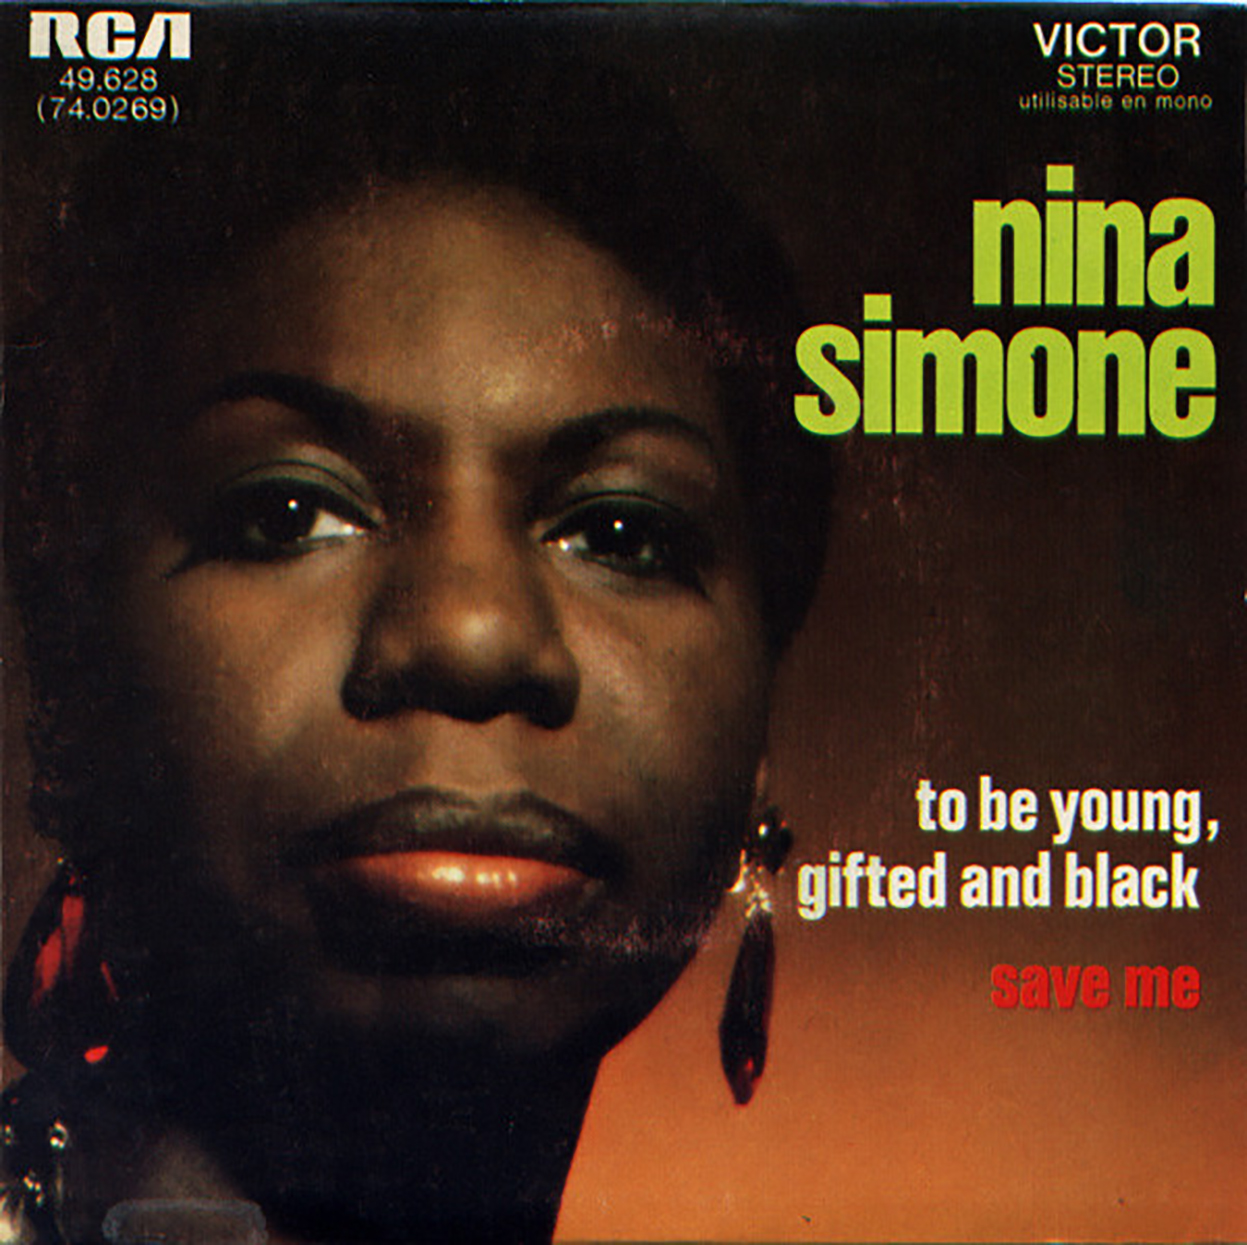 Nina Simone: história de luta e superação.